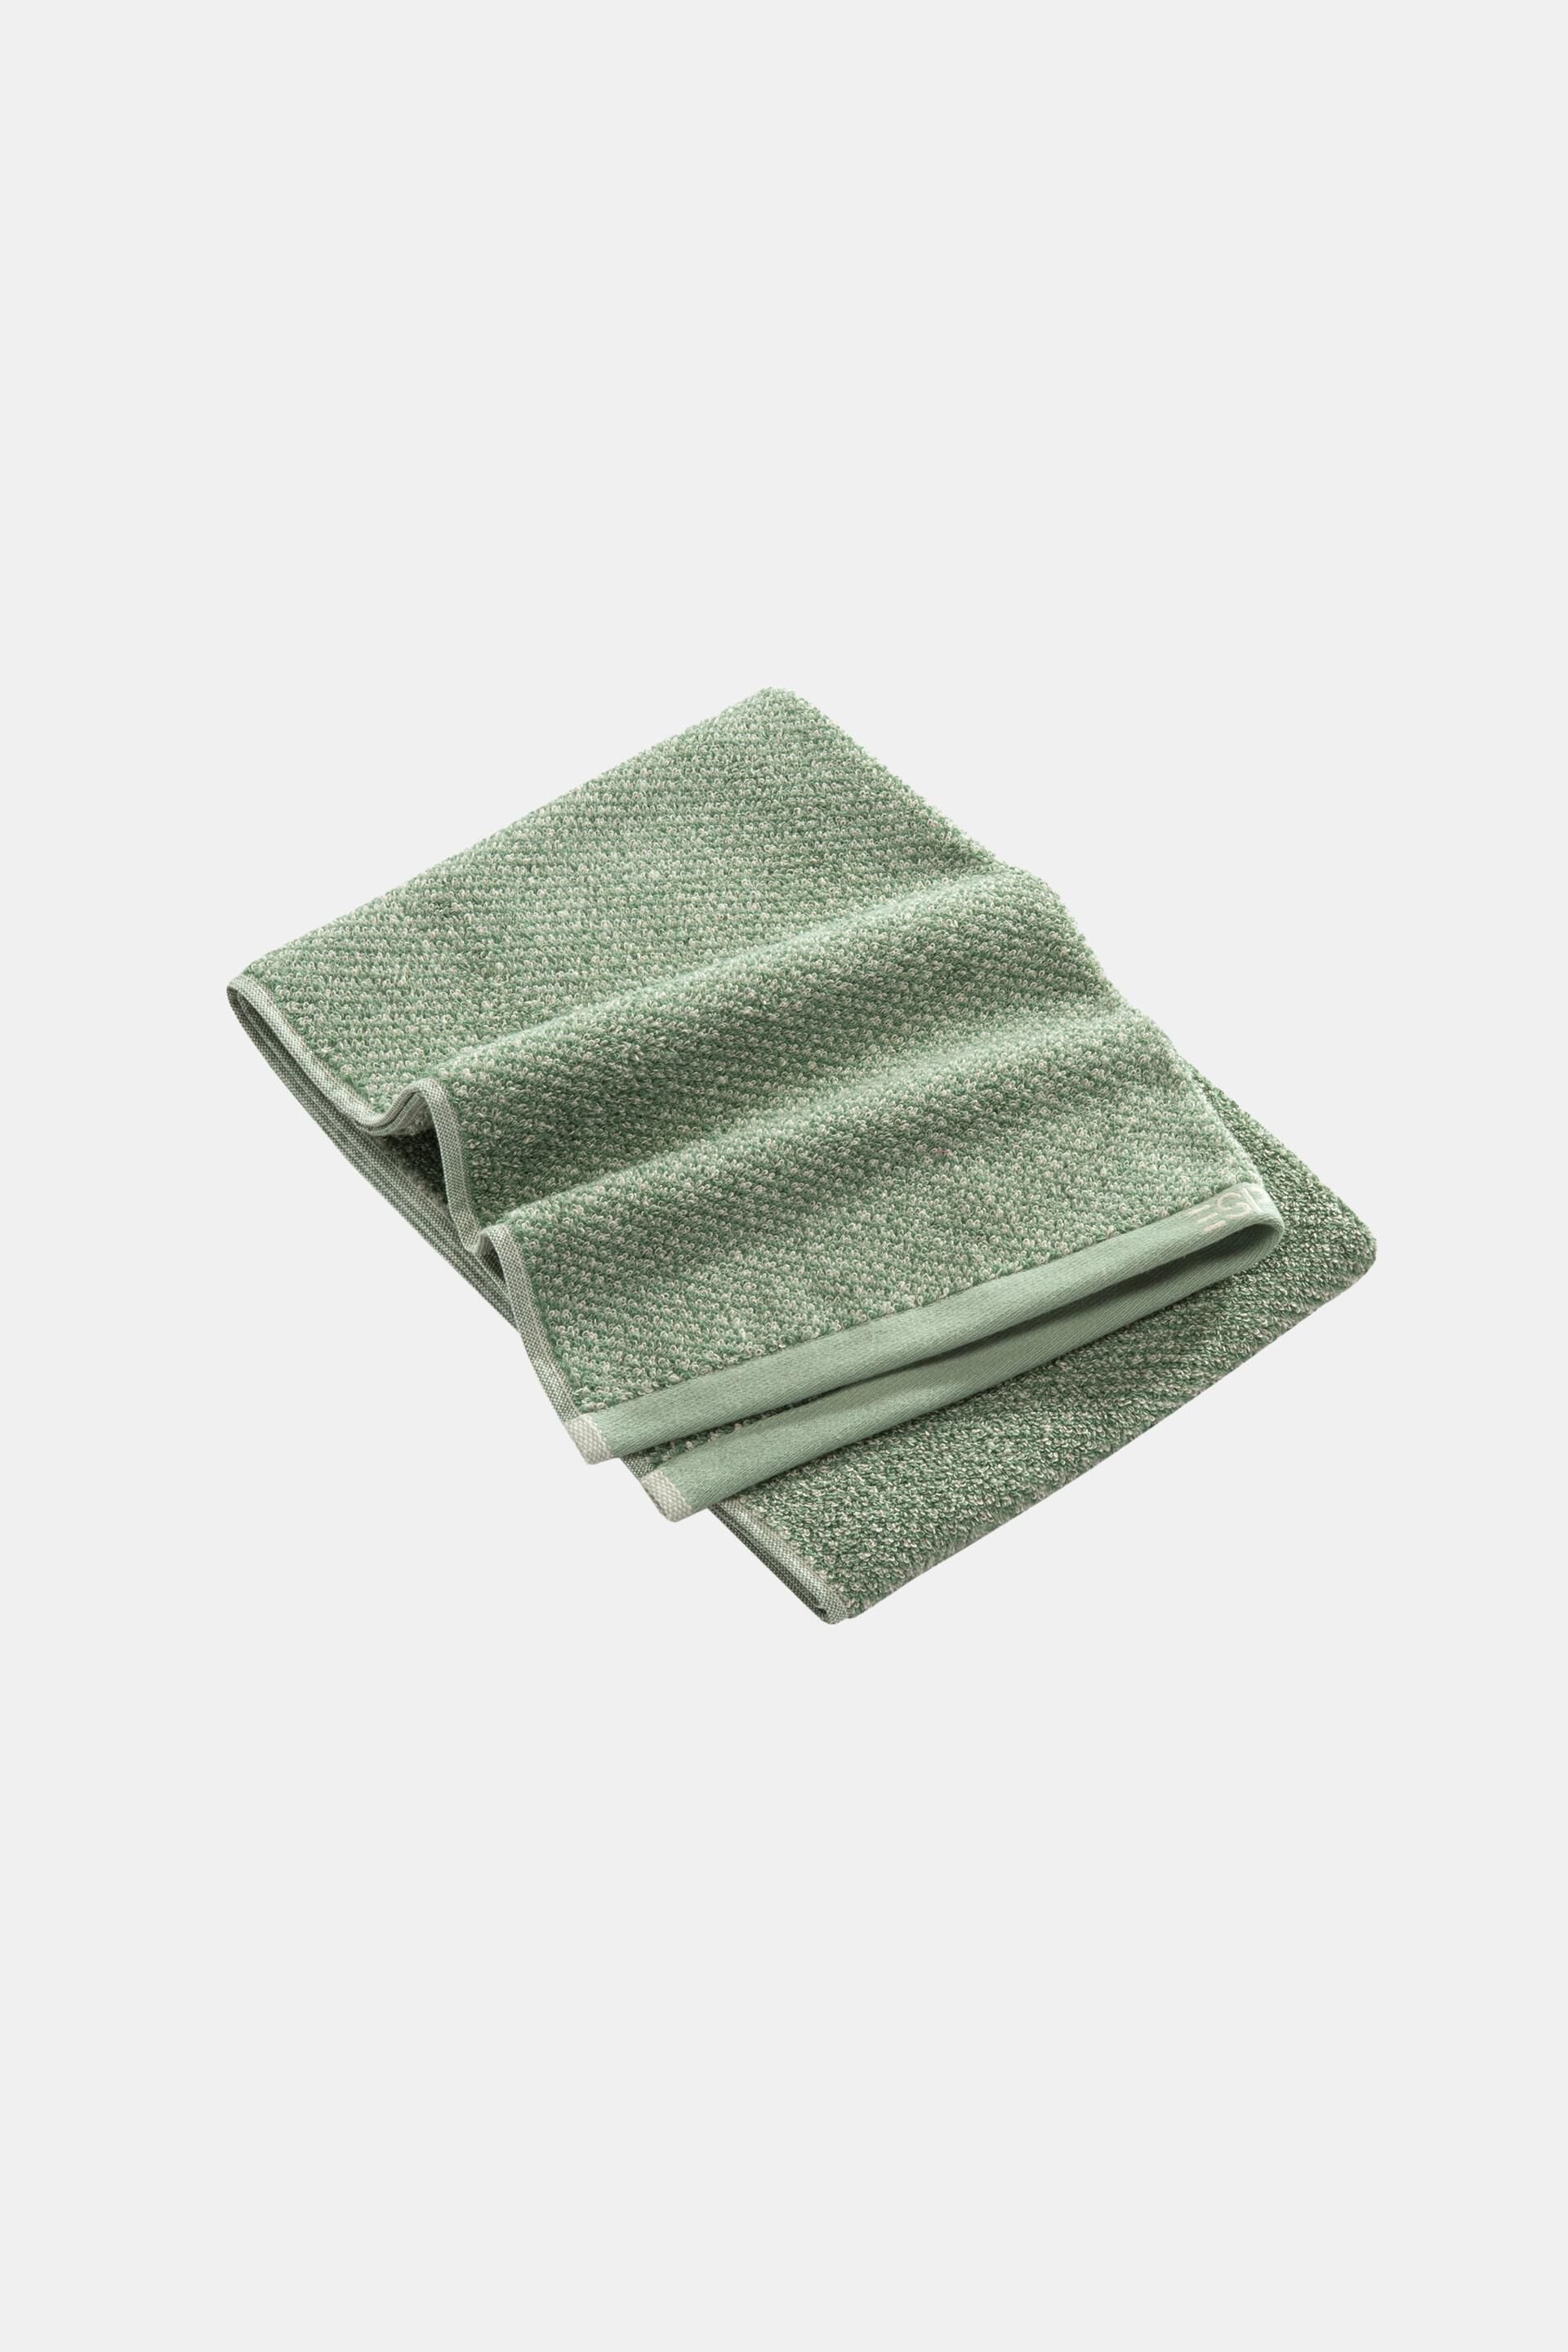 Esprit towel, cotton Melange 100%